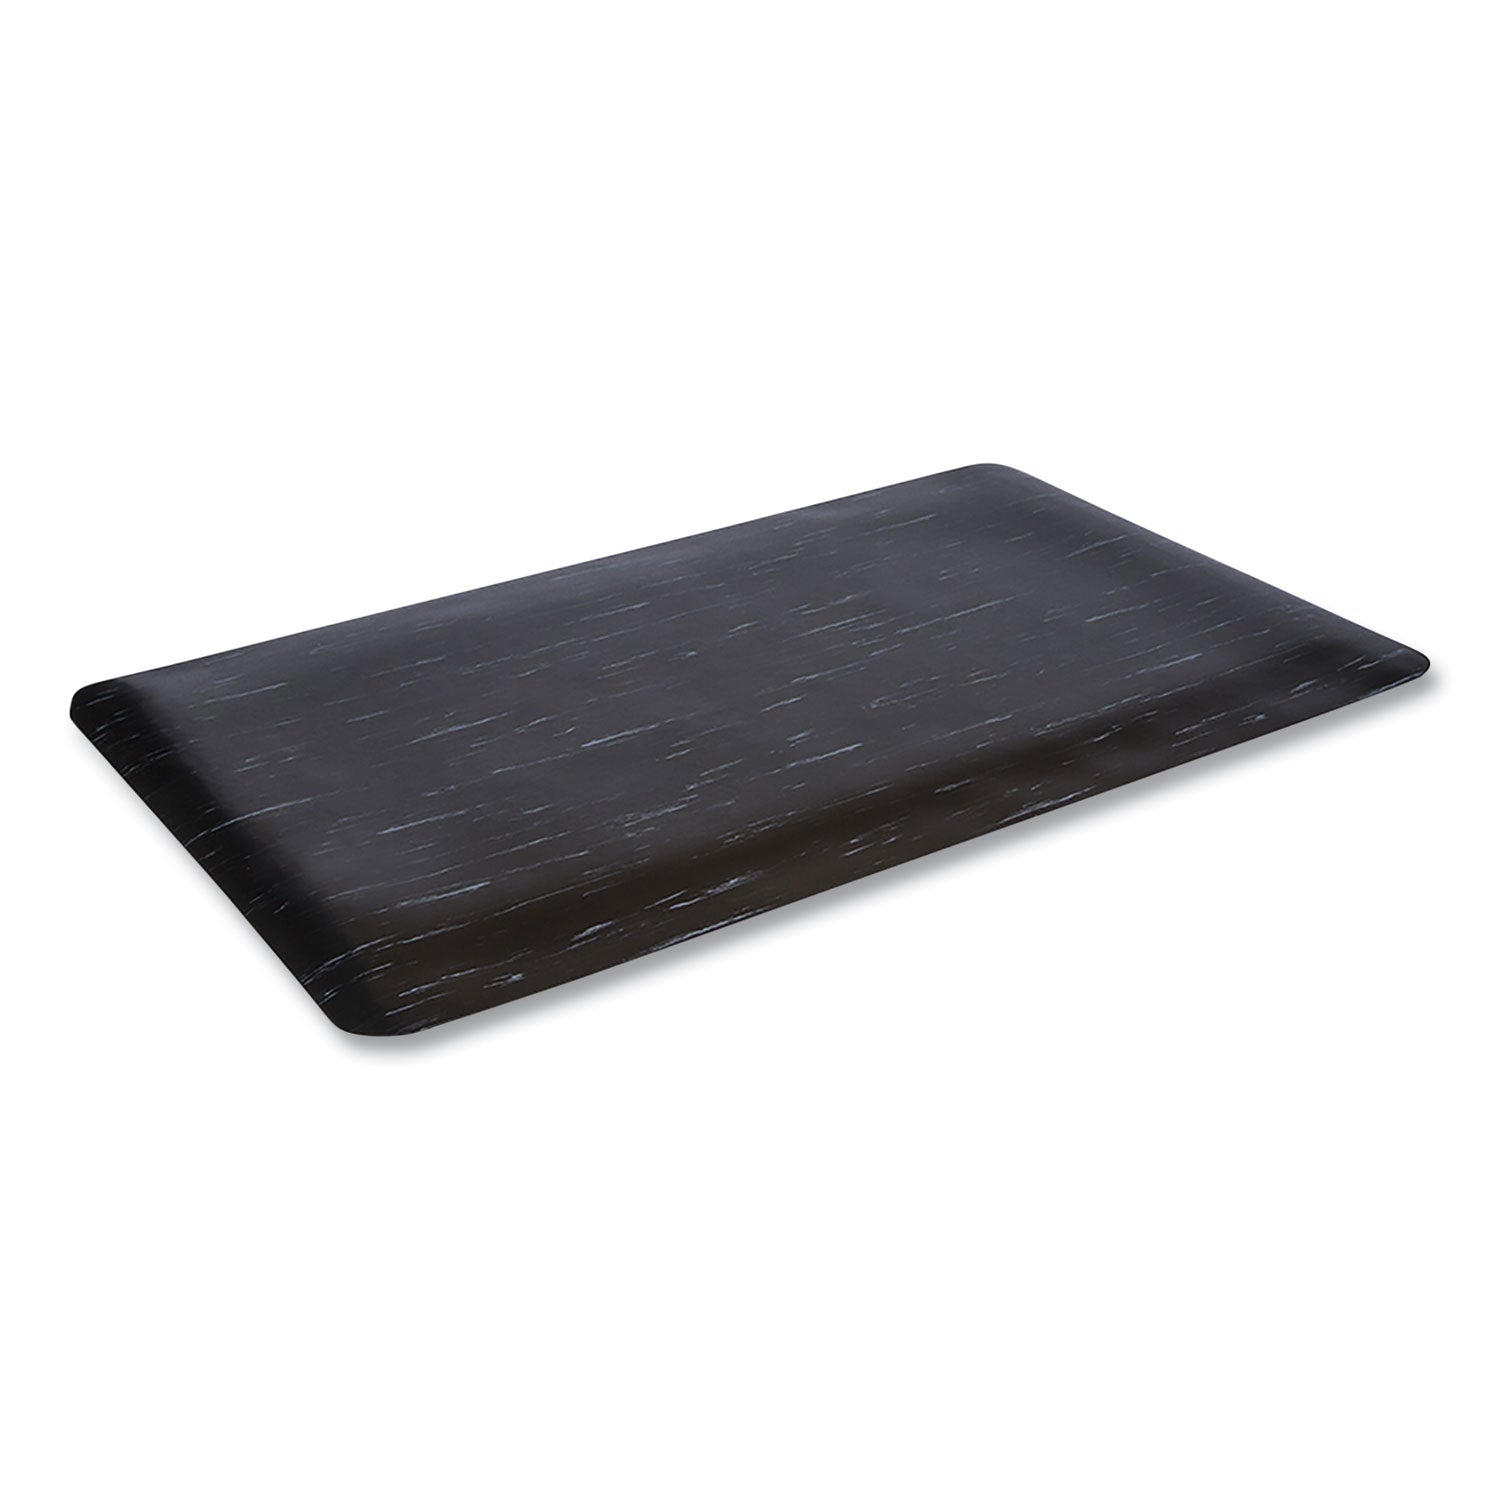 Cushion-Step Marbleized Rubber Mat, 36 x 72, Black - 